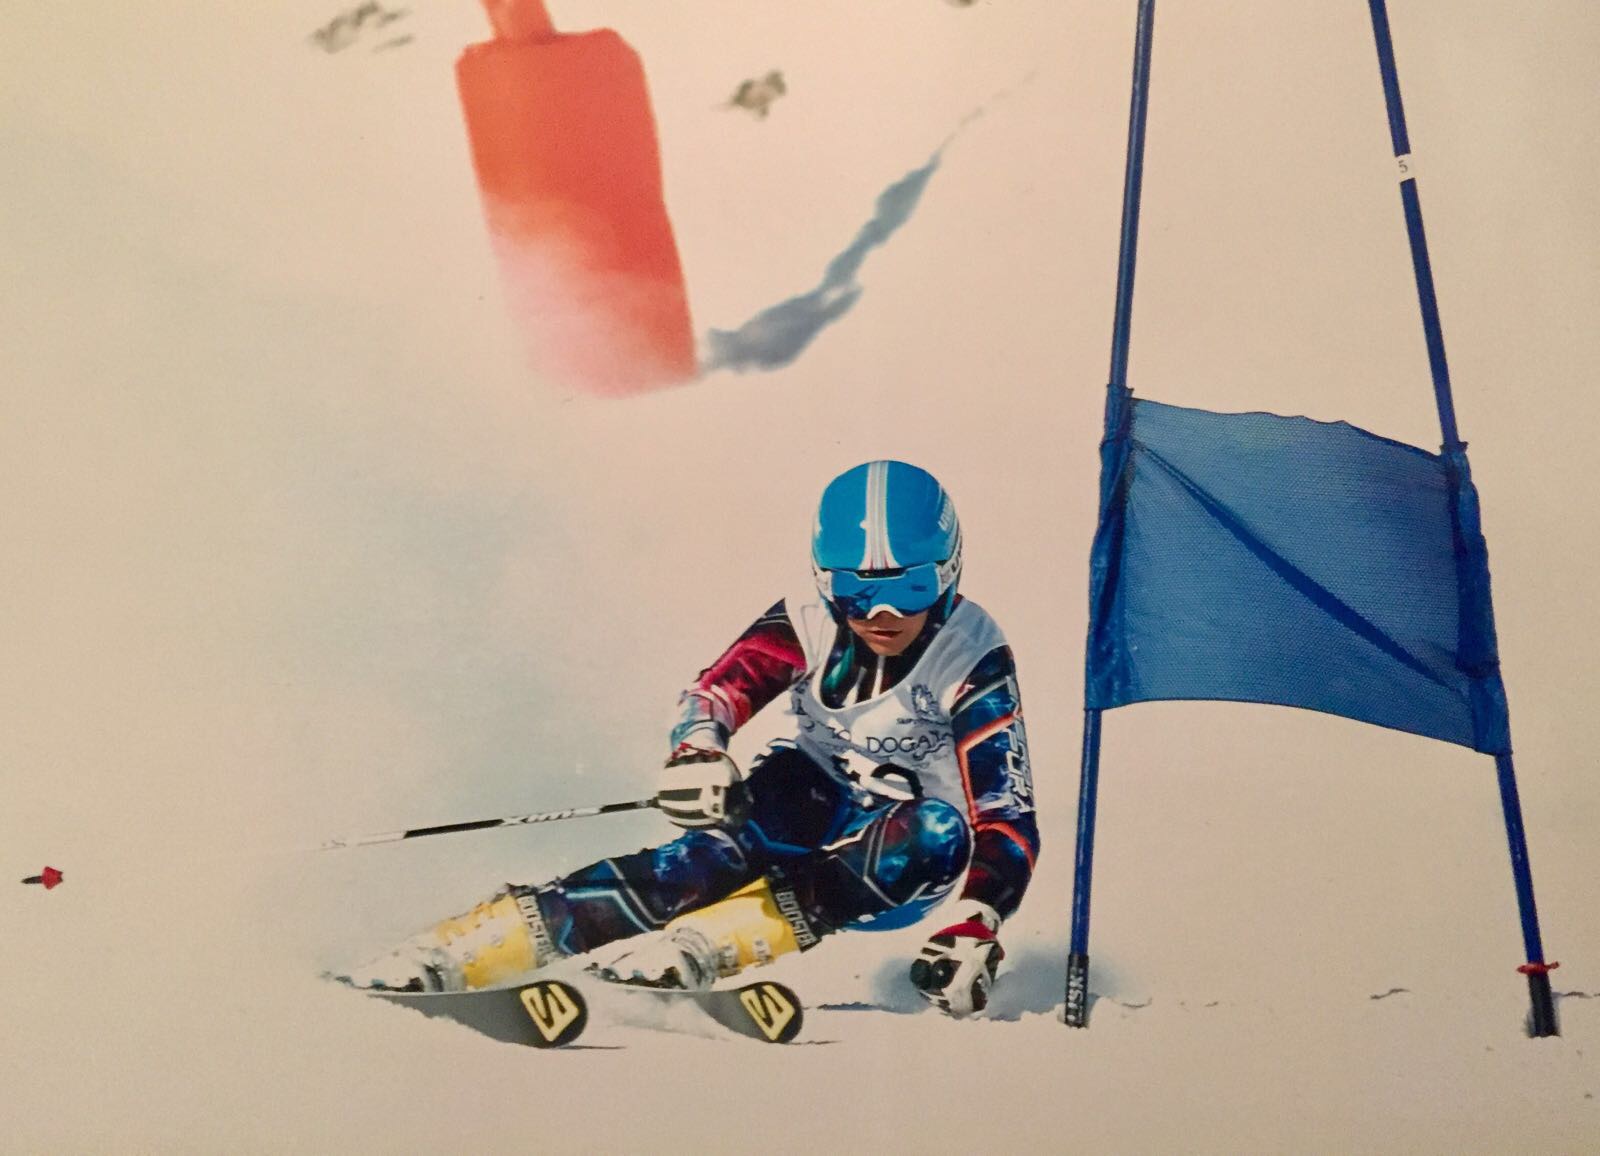  Campionati regionali di sci alpino: oro alla Valentini,  di Paolo e Brancaccio, sia in slalom e sia in gigante